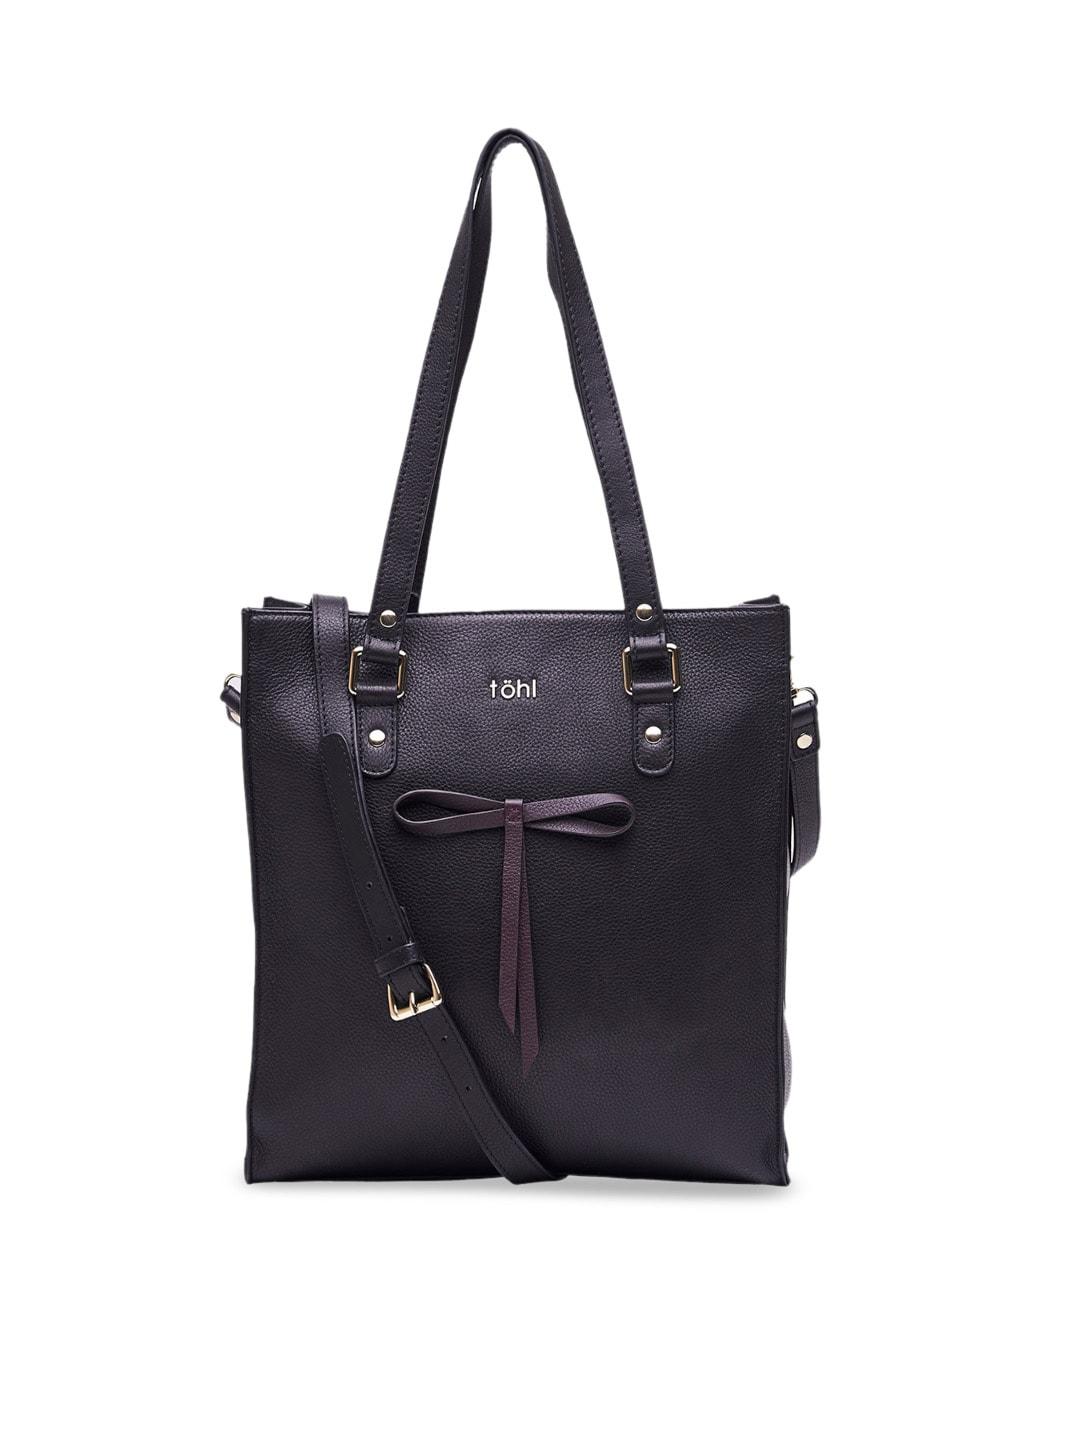 tohl Black & Burgundy Solid Leather Shoulder Bag